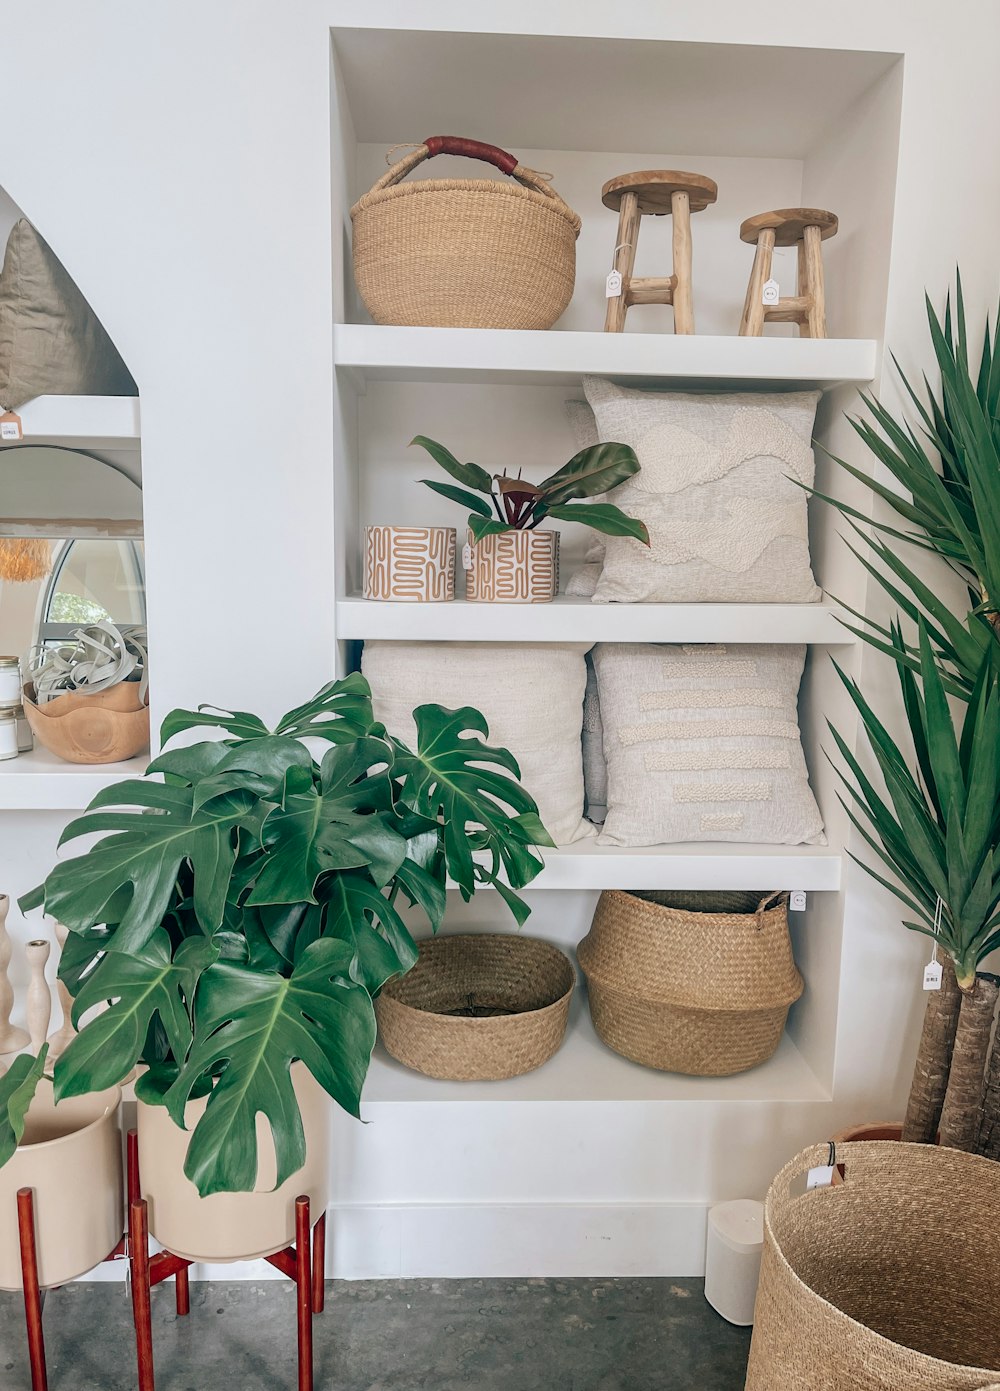 Un estante blanco lleno de muchas cestas y plantas